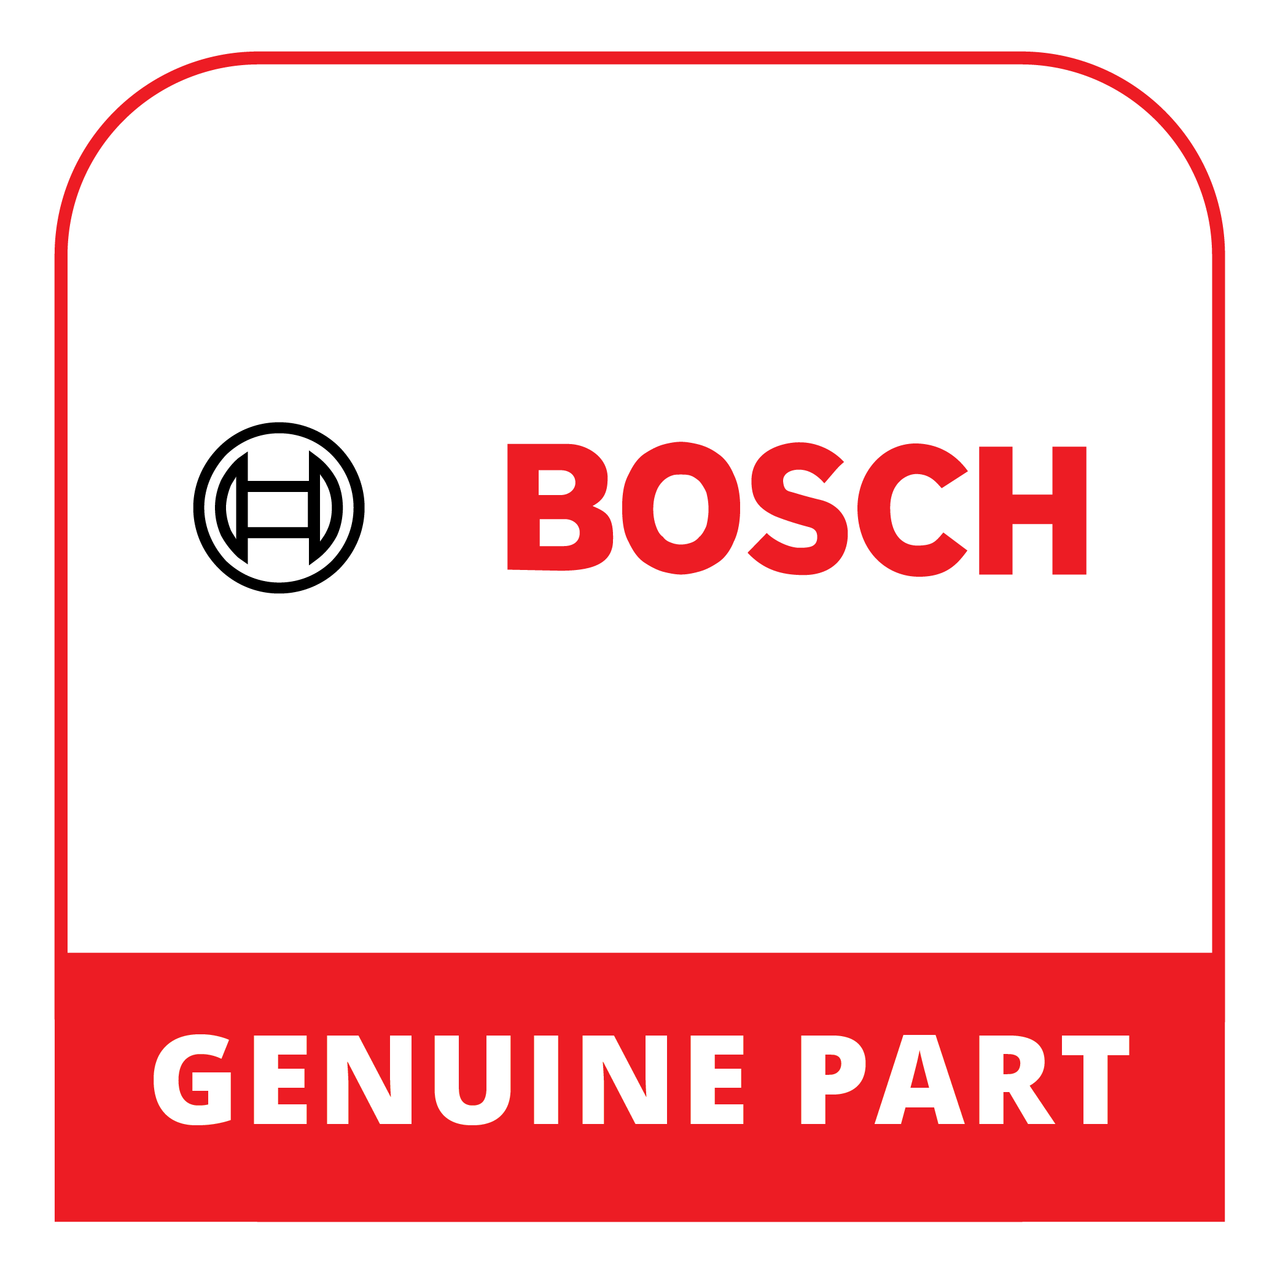 Bosch (Thermador) 20001393 - Door - Genuine Bosch (Thermador) Part